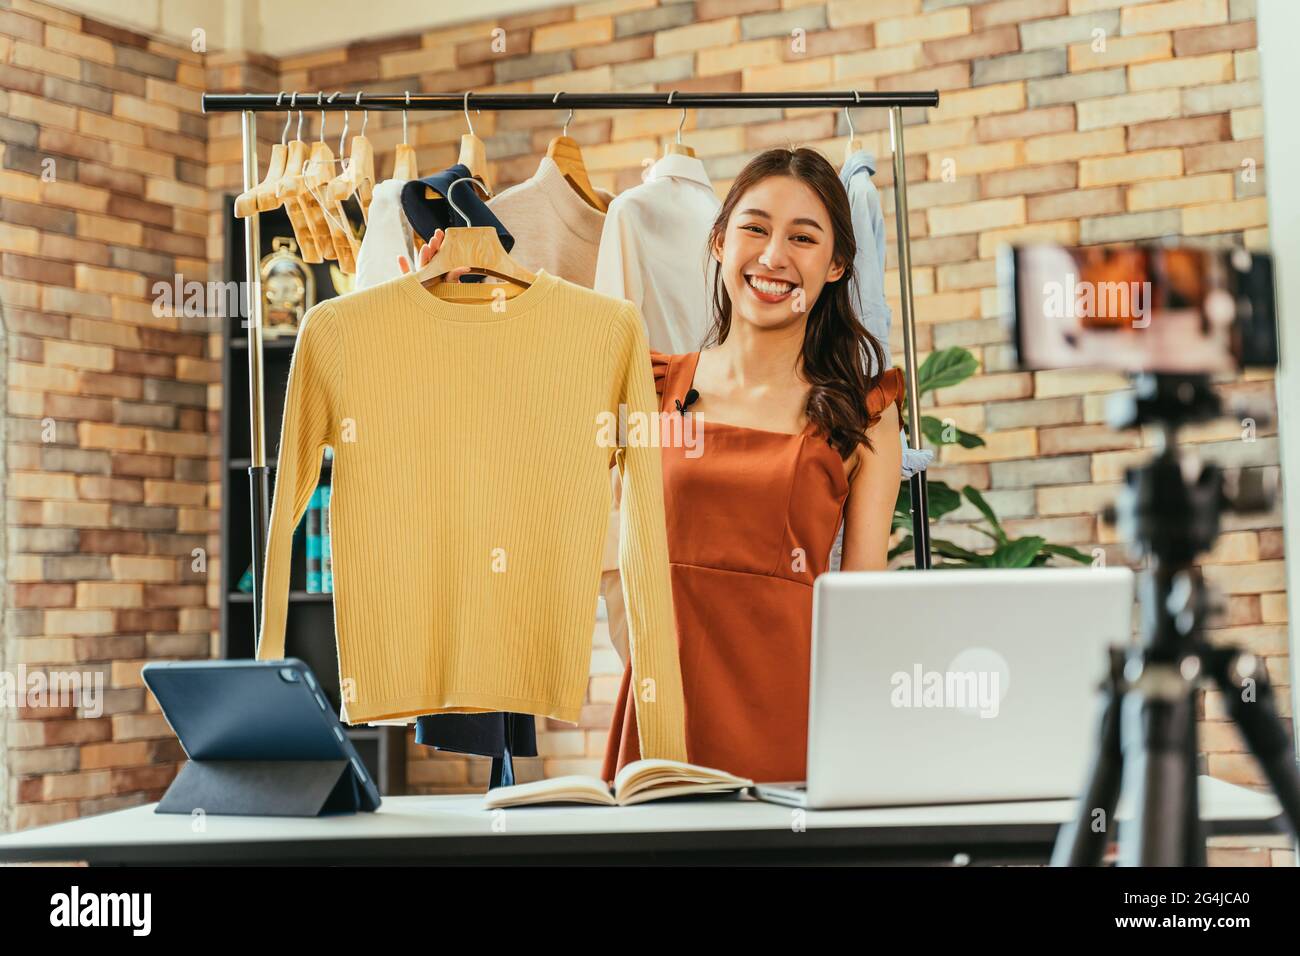 Junge und schöne asiatische Bloggerin zeigt Kleidung vor der Smartphone-Kamera, während sie Vlog-Video und Live-Streaming in ihrem Shop aufnimmt Stockfoto